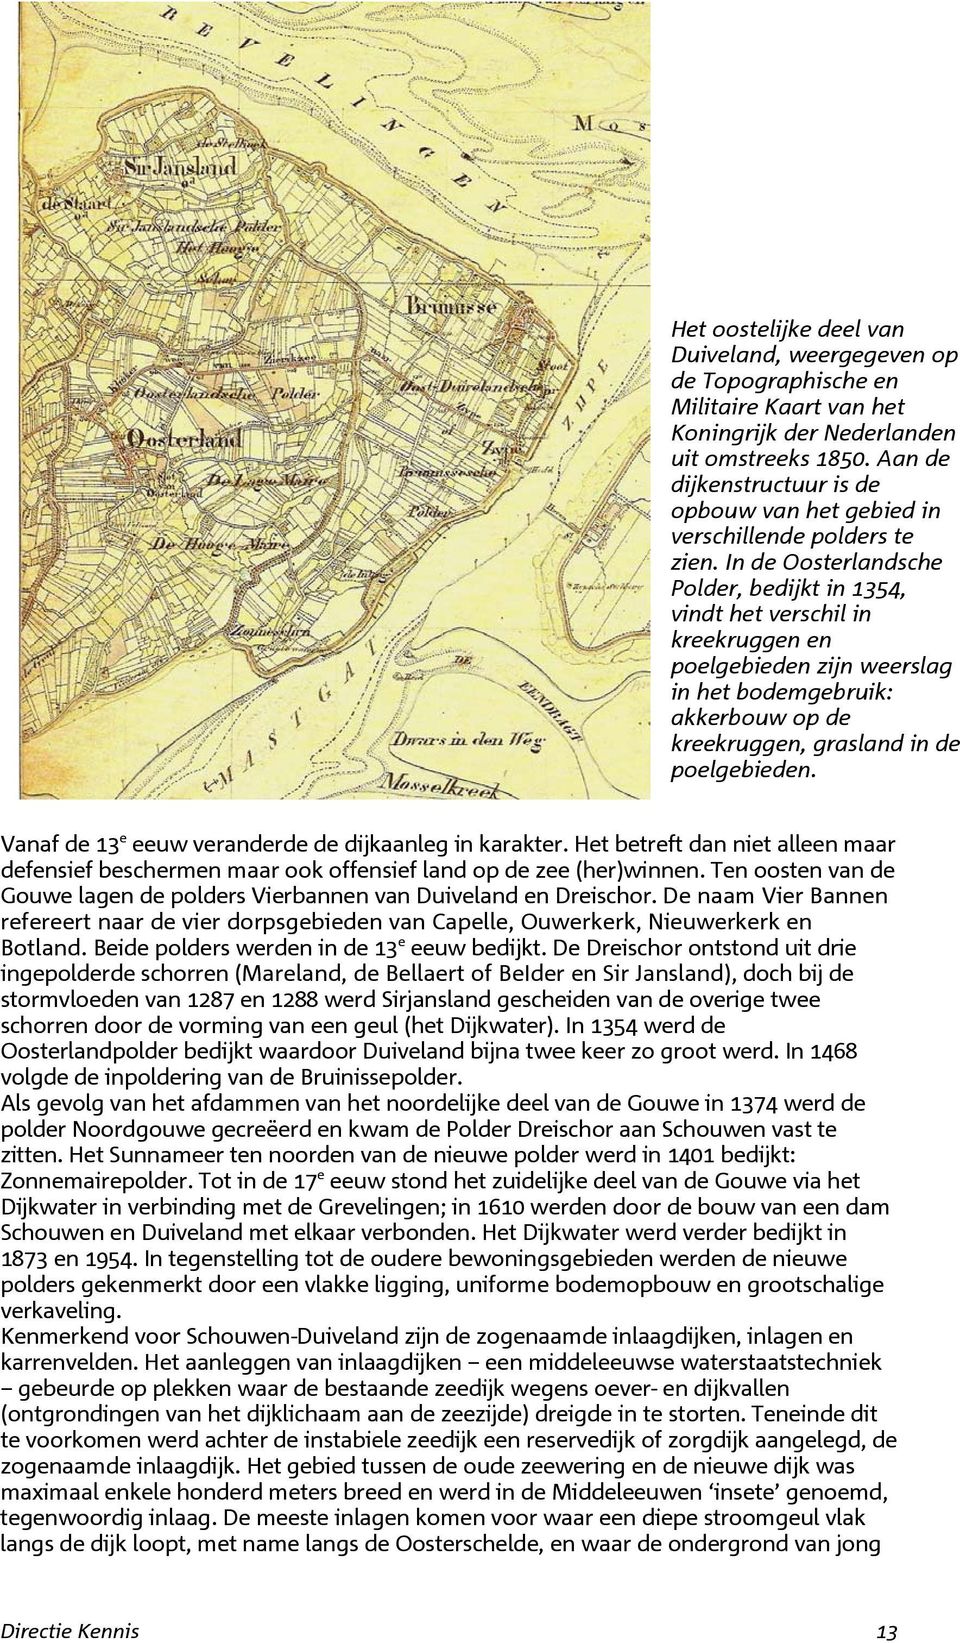 In de Oosterlandsche Polder, bedijkt in 1354, vindt het verschil in kreekruggen en poelgebieden zijn weerslag in het bodemgebruik: akkerbouw op de kreekruggen, grasland in de poelgebieden.